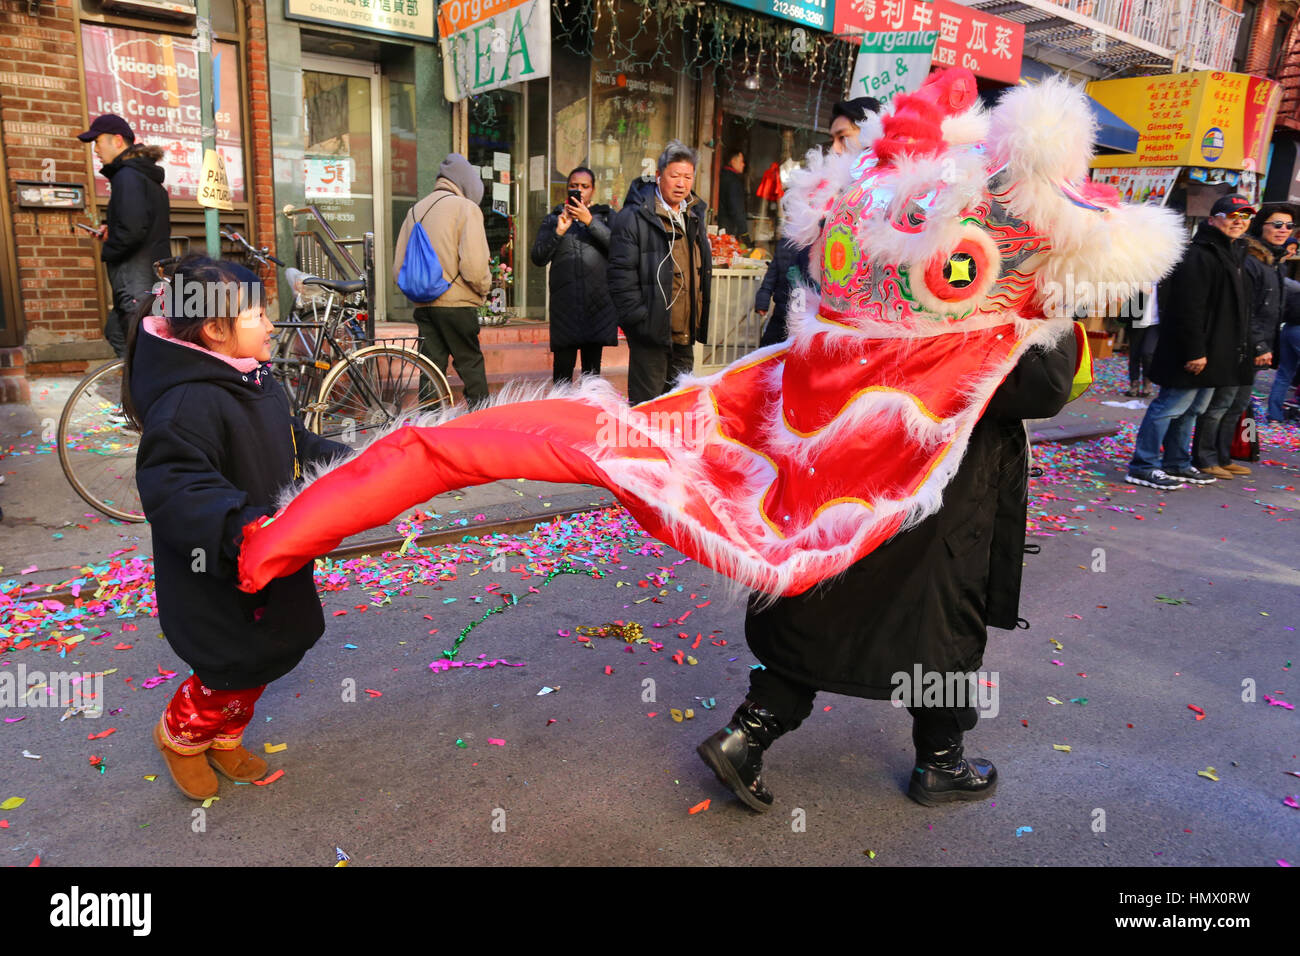 Nueva York, Estados Unidos. 04 Feb, 2017. Chinatown de Nueva York celebra el Año Nuevo Lunar, el Año del Gallo con danzas del león, bailes del dragón, y un gran desfile. Crédito: Robert K. Chin/Pacific Press/Alamy Live News Foto de stock